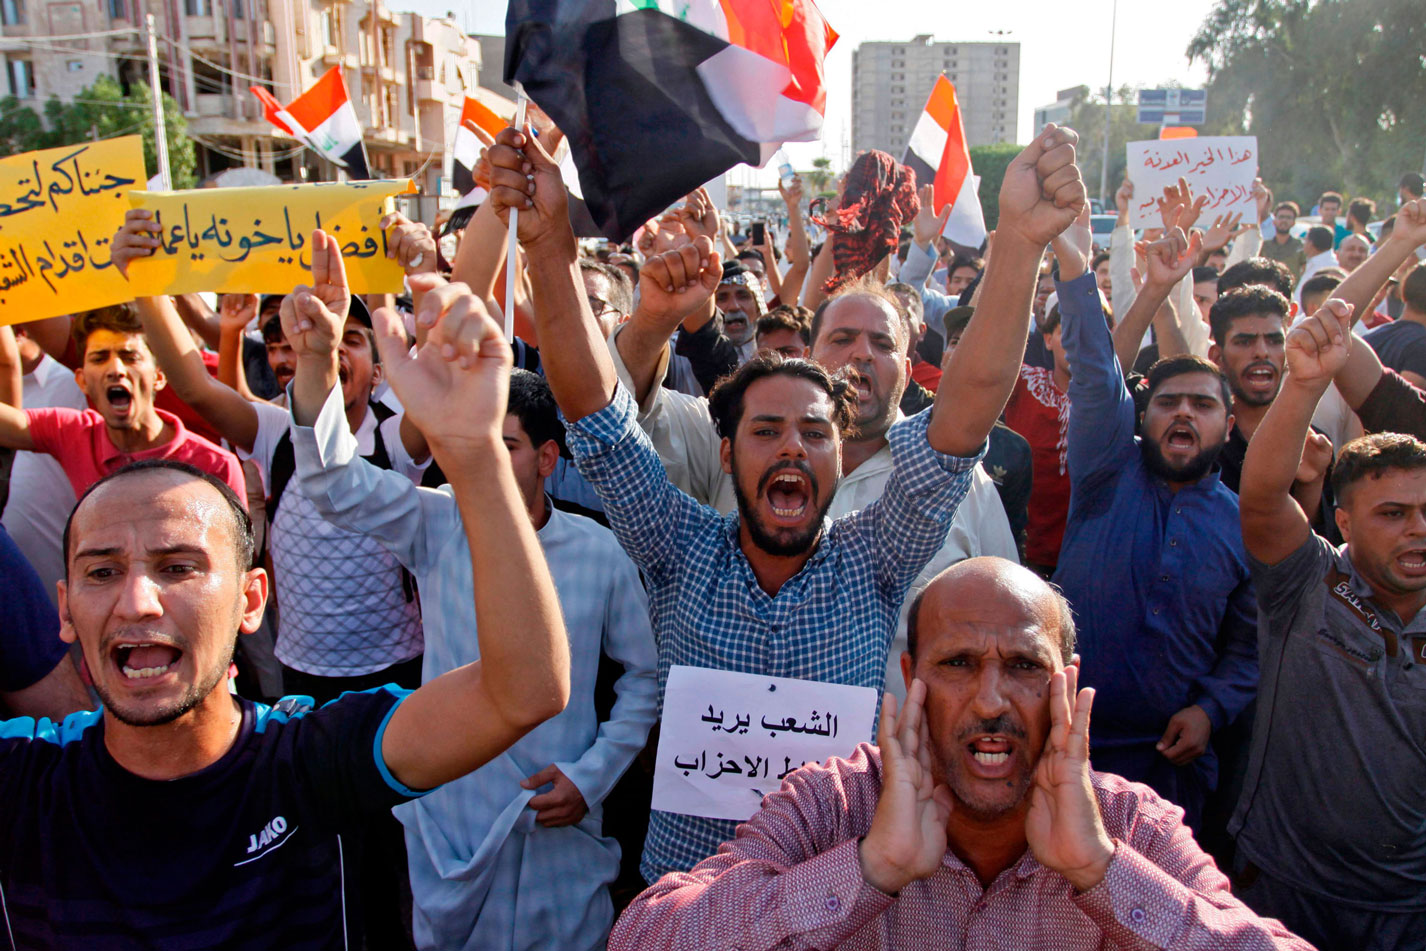 غضب عارم يجتاح العديد من المحافظات العراقية